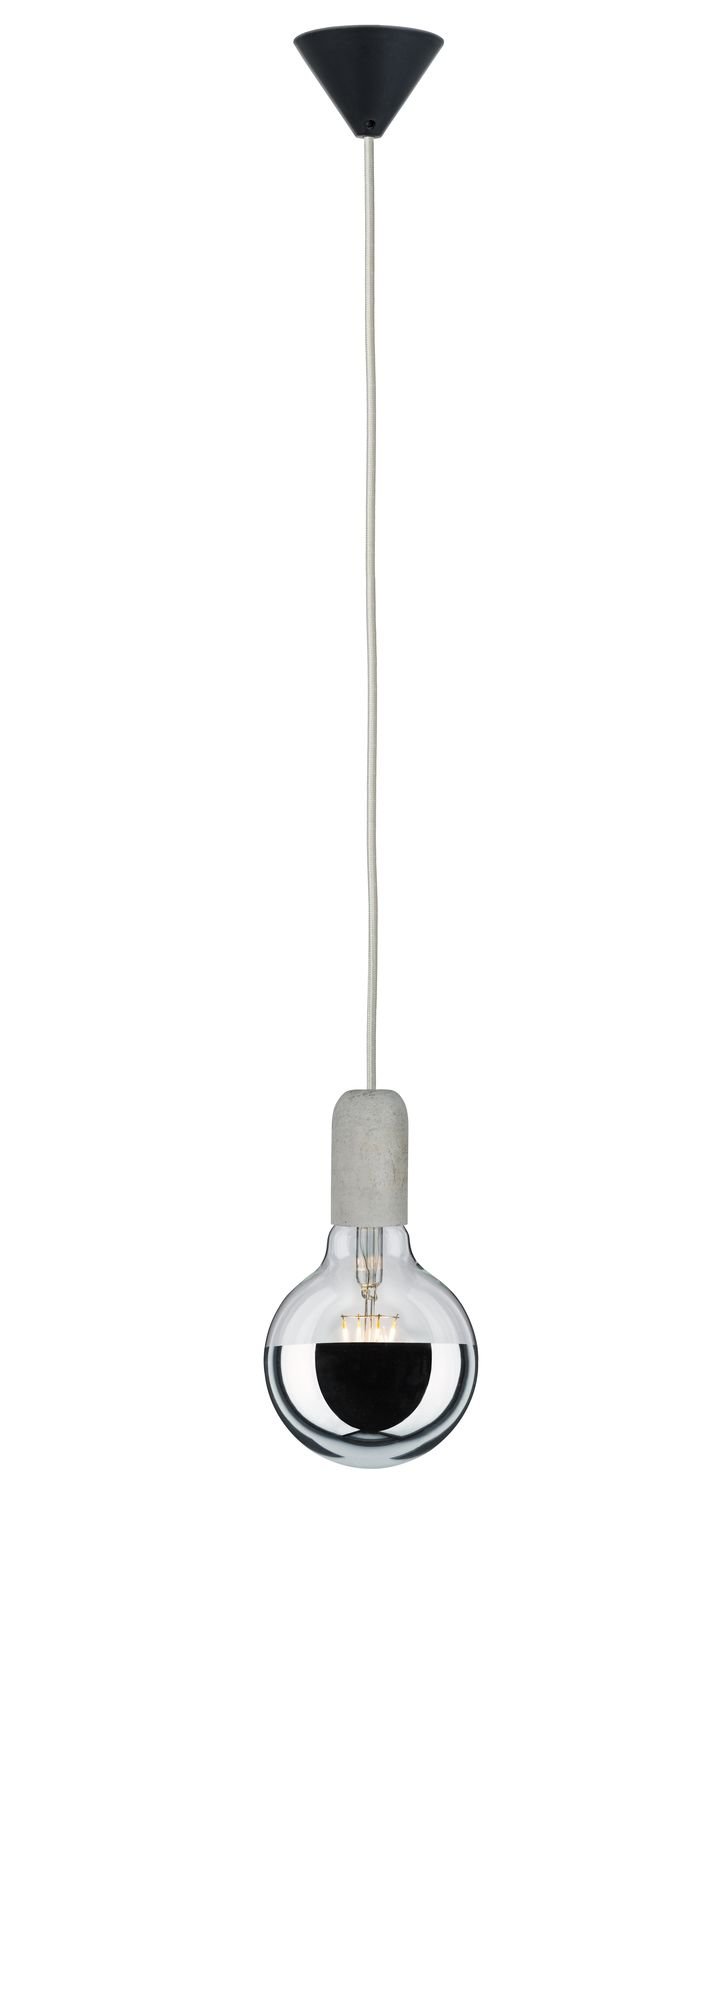 Neordic Hanglamp Jano E27 max. 60W Grijs/Zwart dimbaar Beton/Kunststof